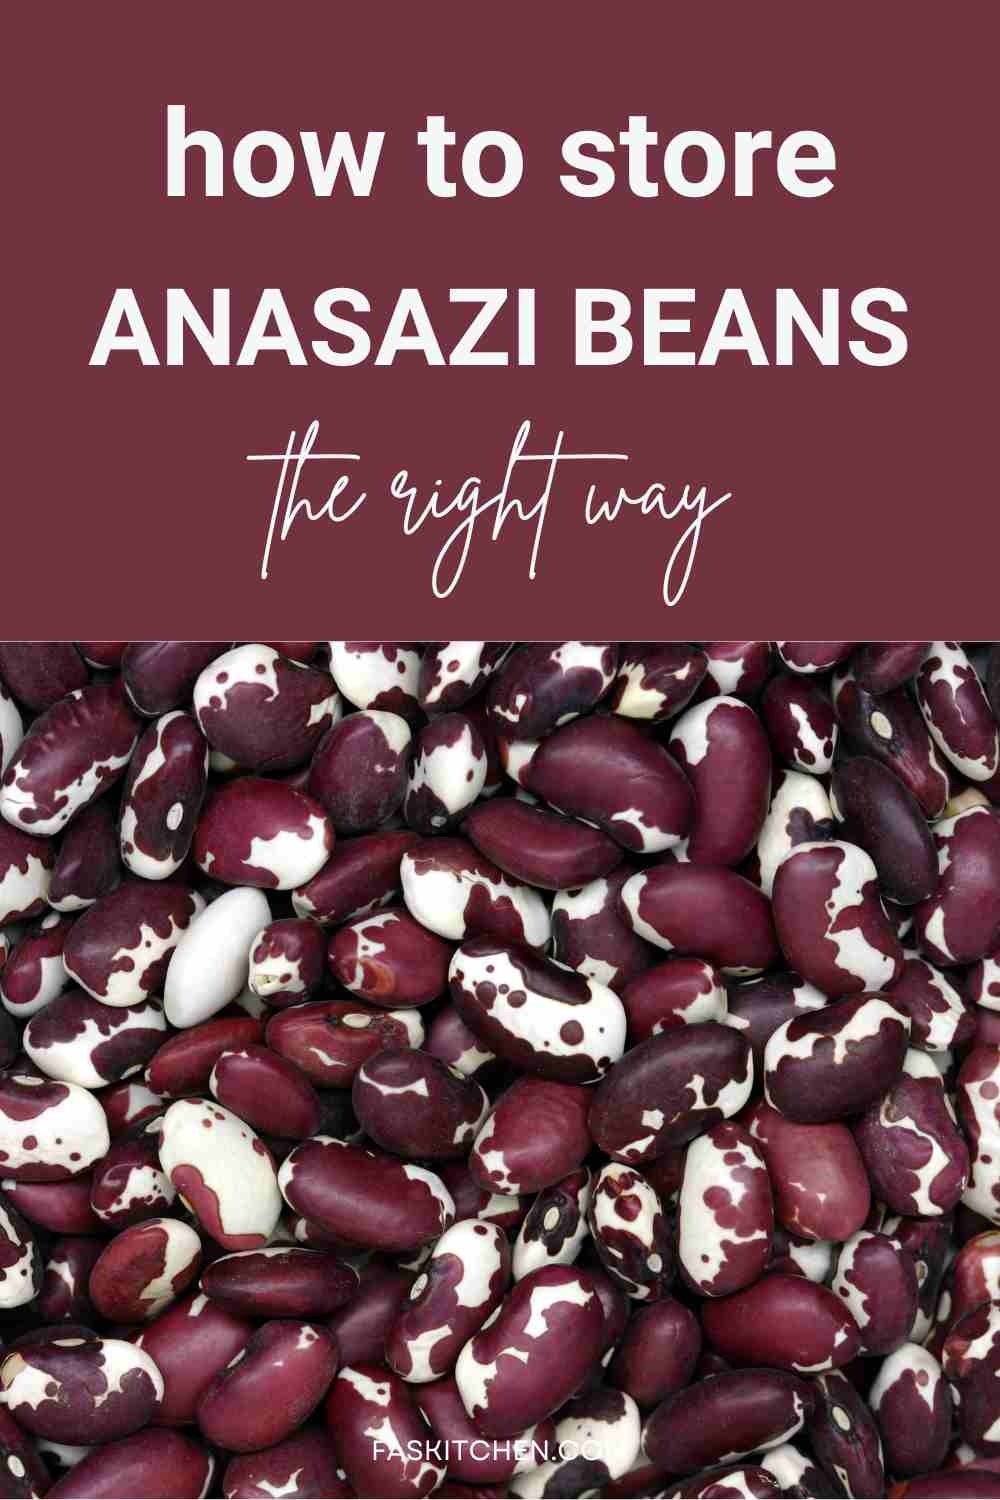 Anasazi beans storing